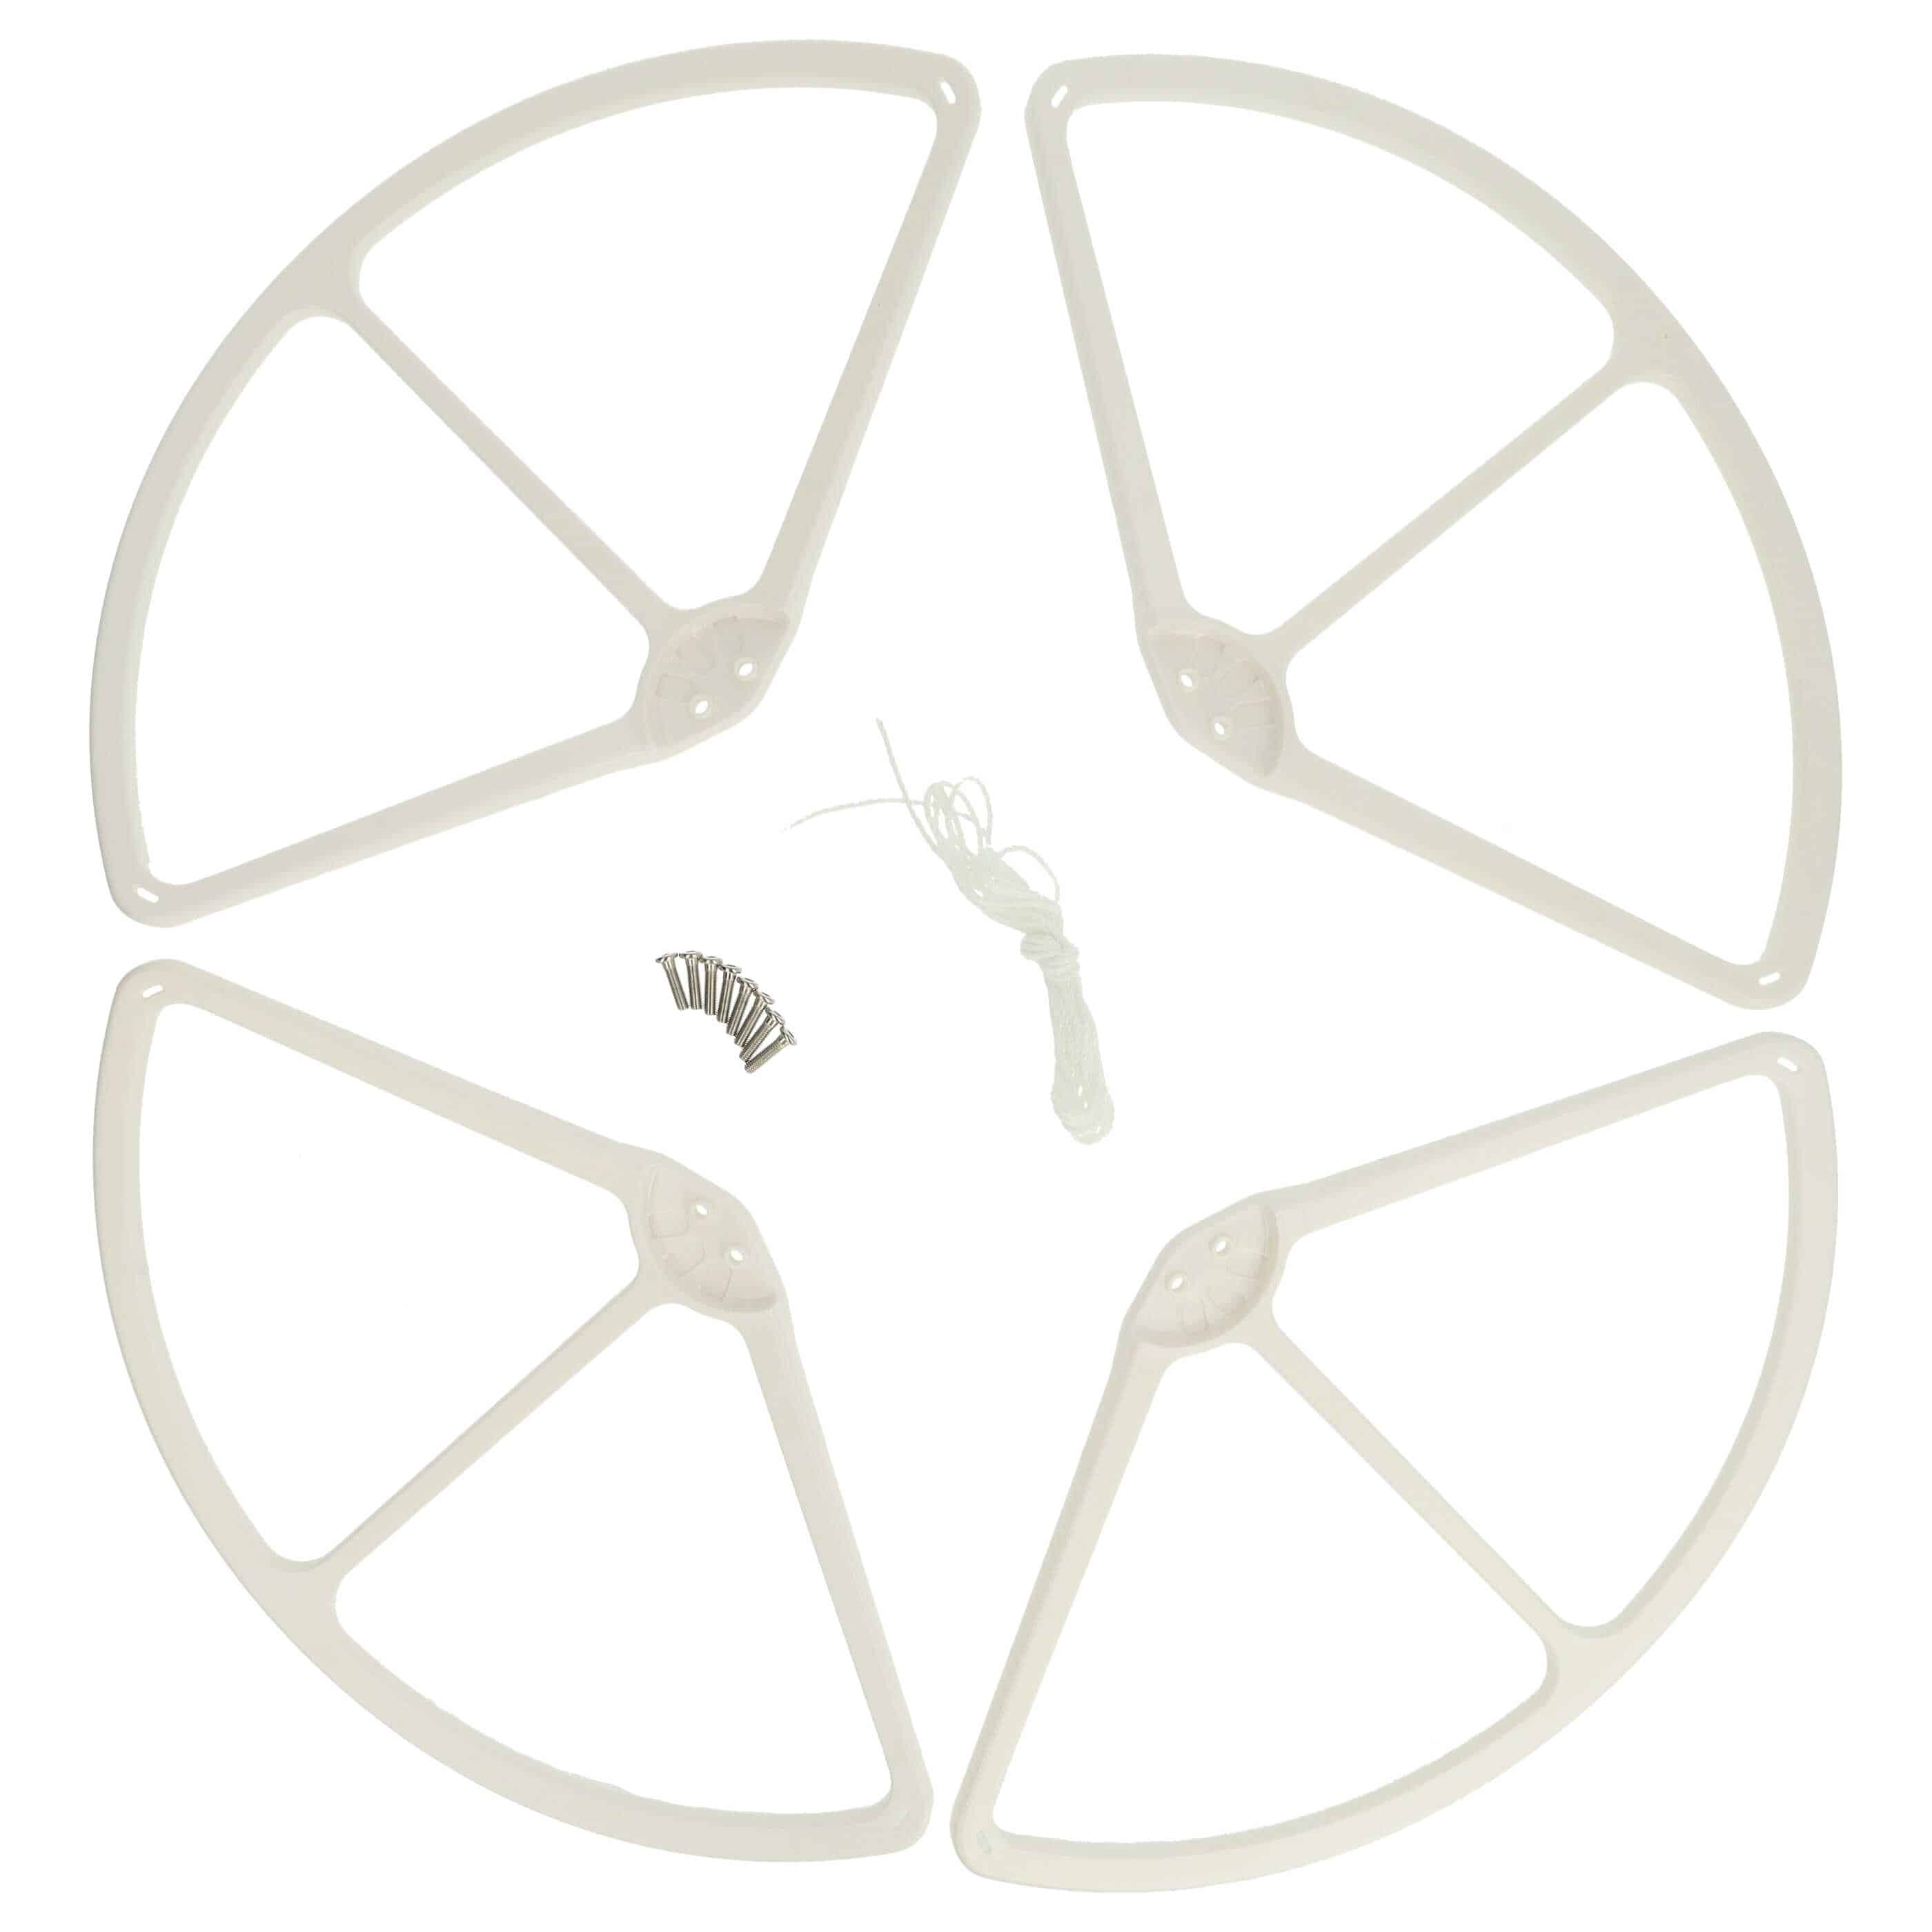 4x protezione delle eliche per drone DJI Phantom 3 Advanced - Copertura, bianco